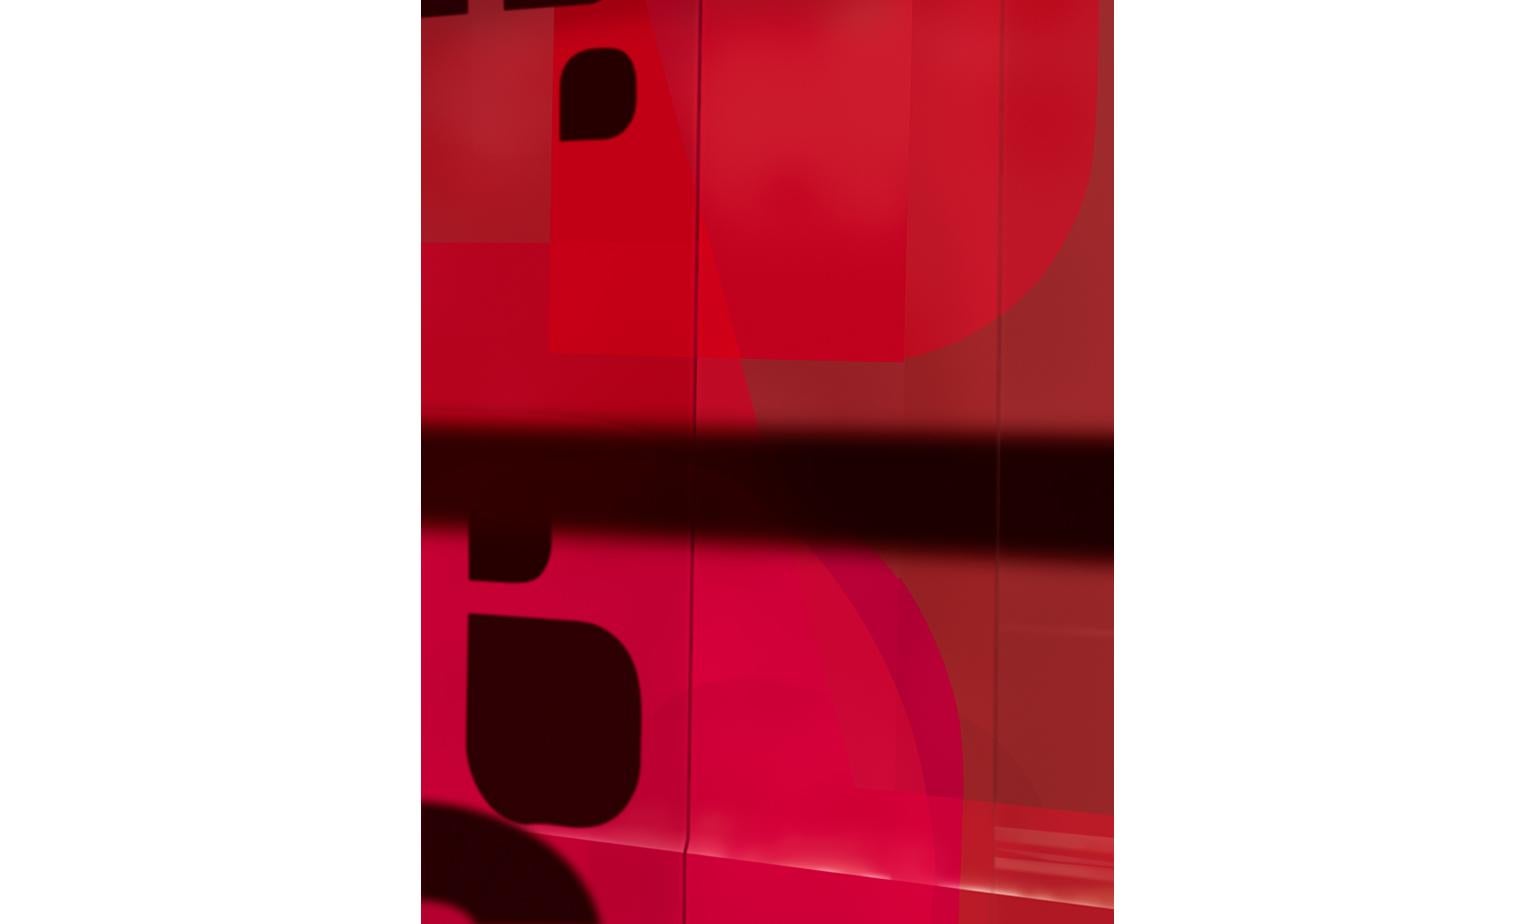 observation abstraite monochrome à grande échelle d'éléments architecturaux géométriques, tirée de la série Renderings de Raymond Meier

Fenêtre rouge (Renderings 05) par Raymond Meier

édition limitée à 5 + 3AP
encadrement en aluminium ( 0.5